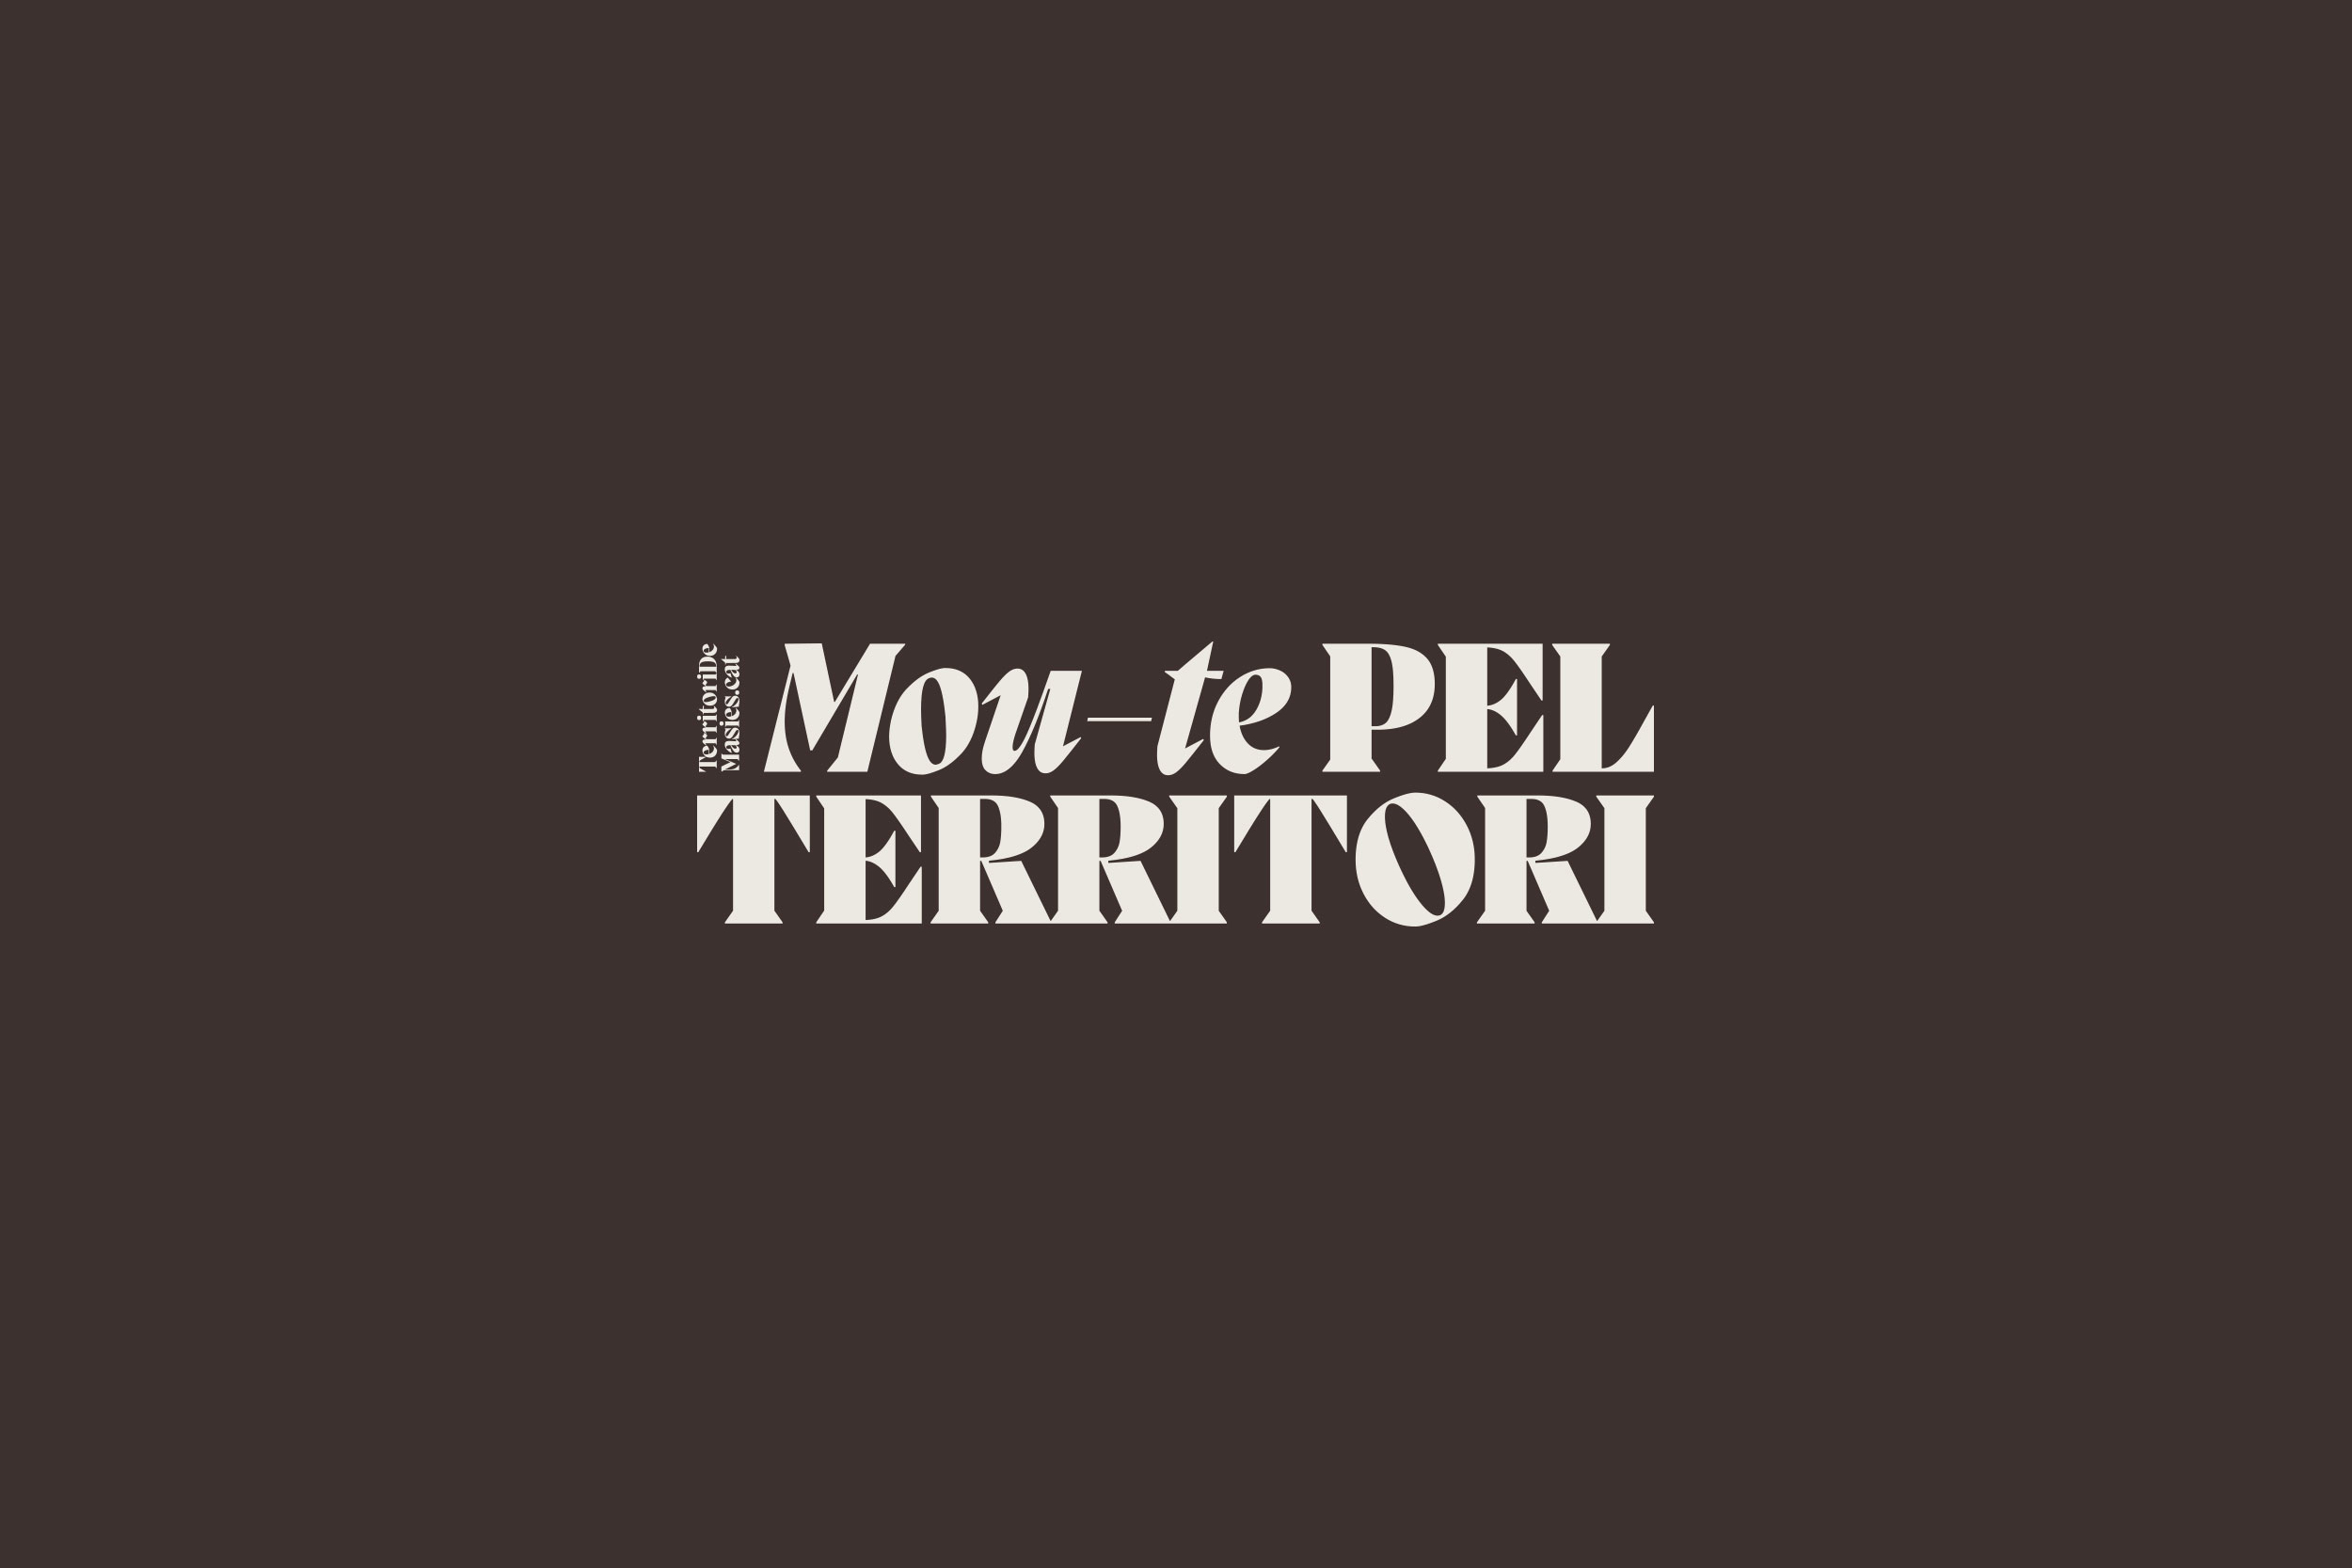 Moute-pel-Territori-02